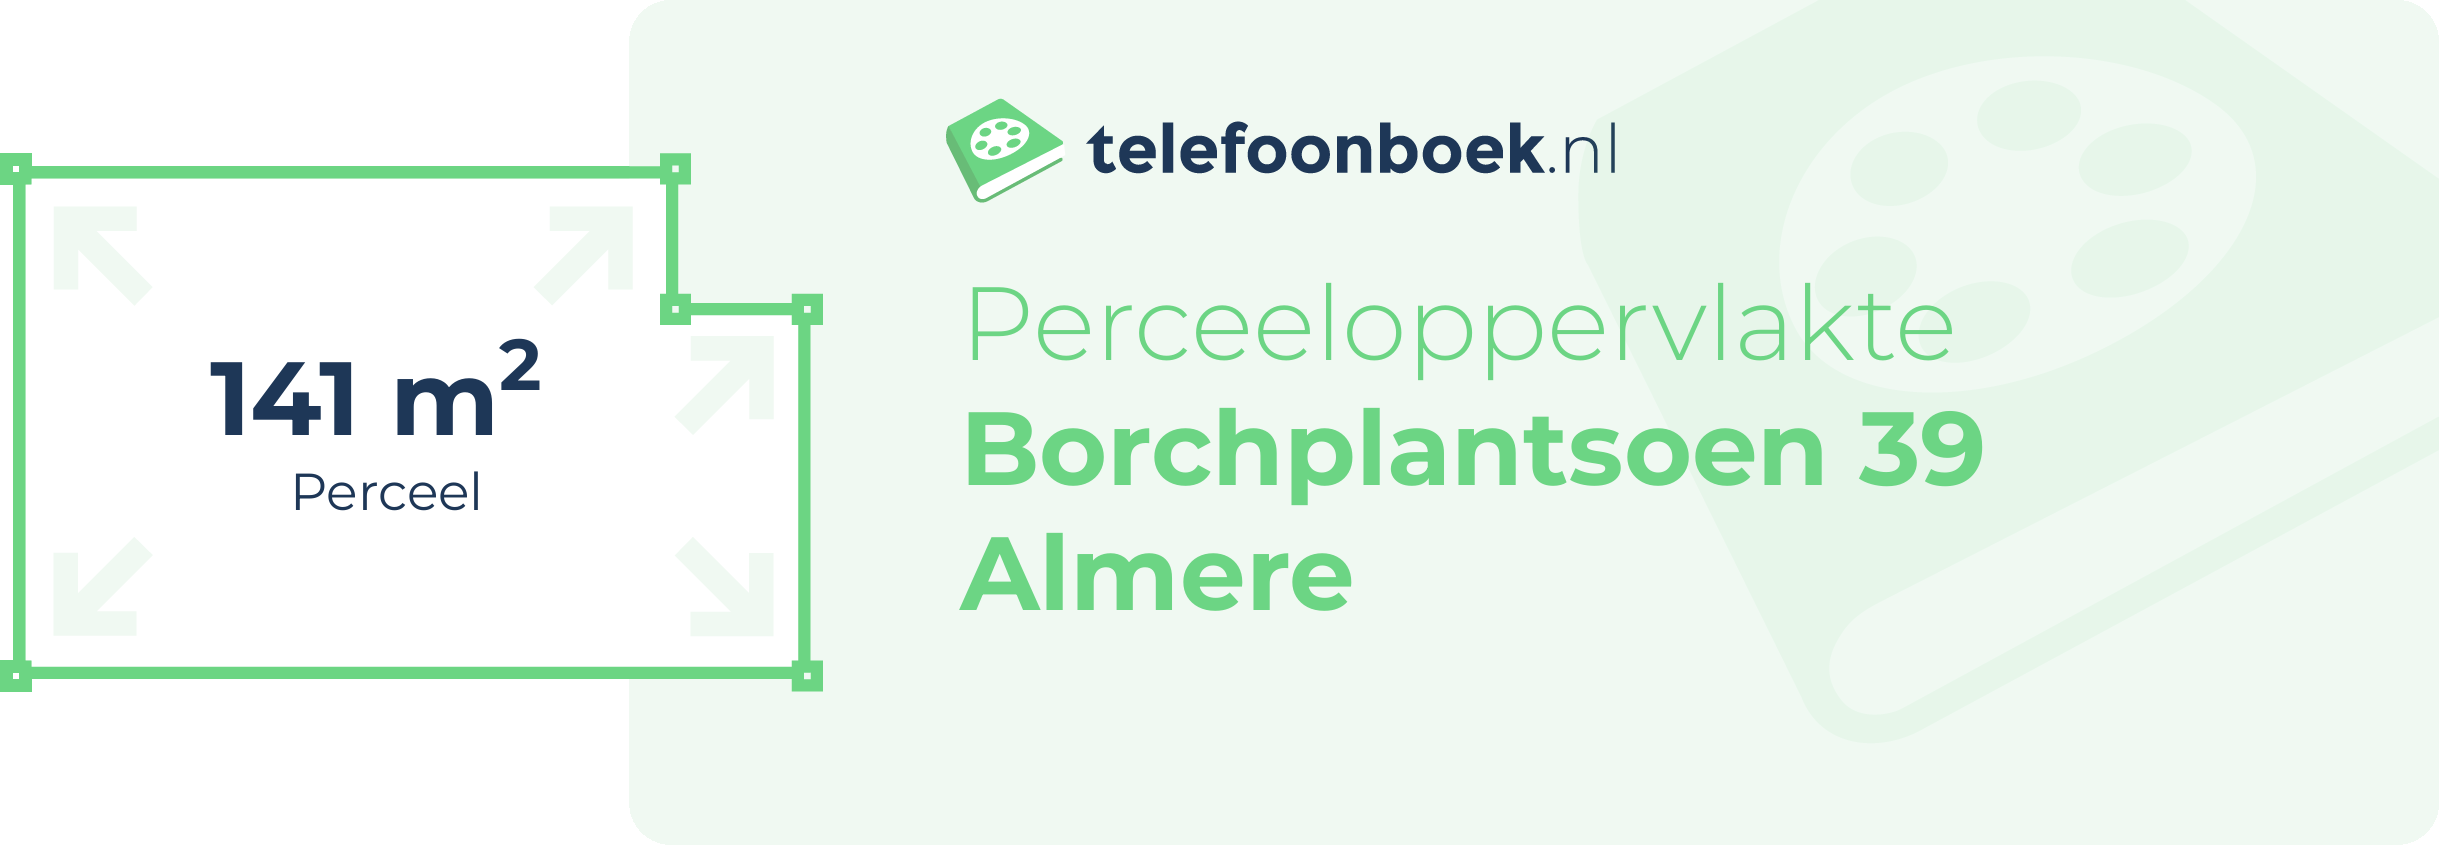 Perceeloppervlakte Borchplantsoen 39 Almere